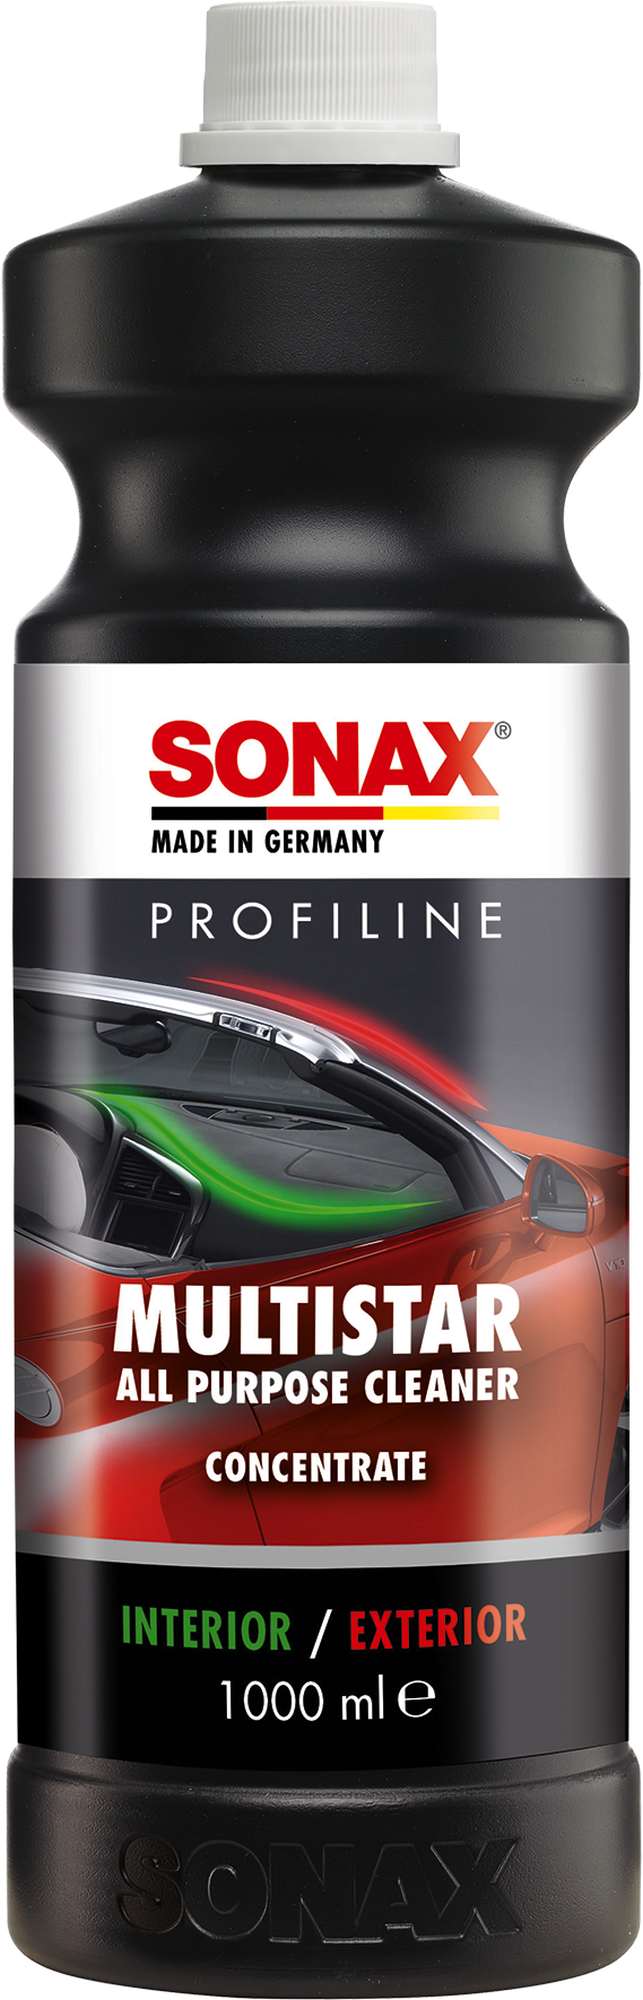 Sonax Profiline MultiStar 1000 ml - Reiniger für Kraftfahrzeuge